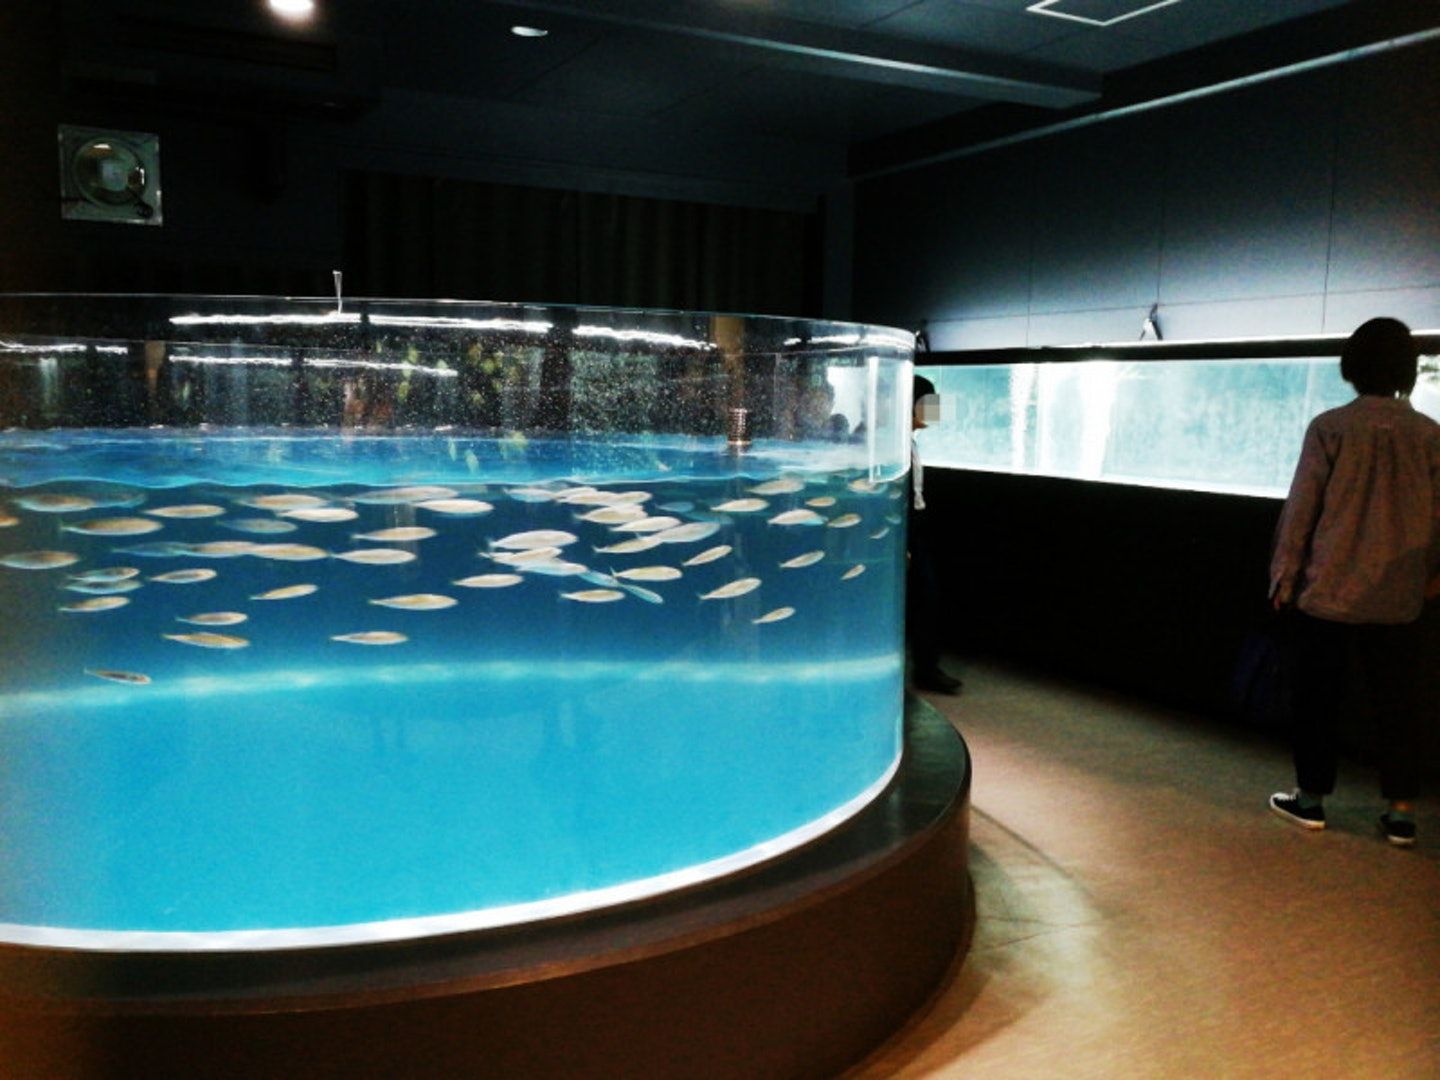 日本廢置學校改建水族館